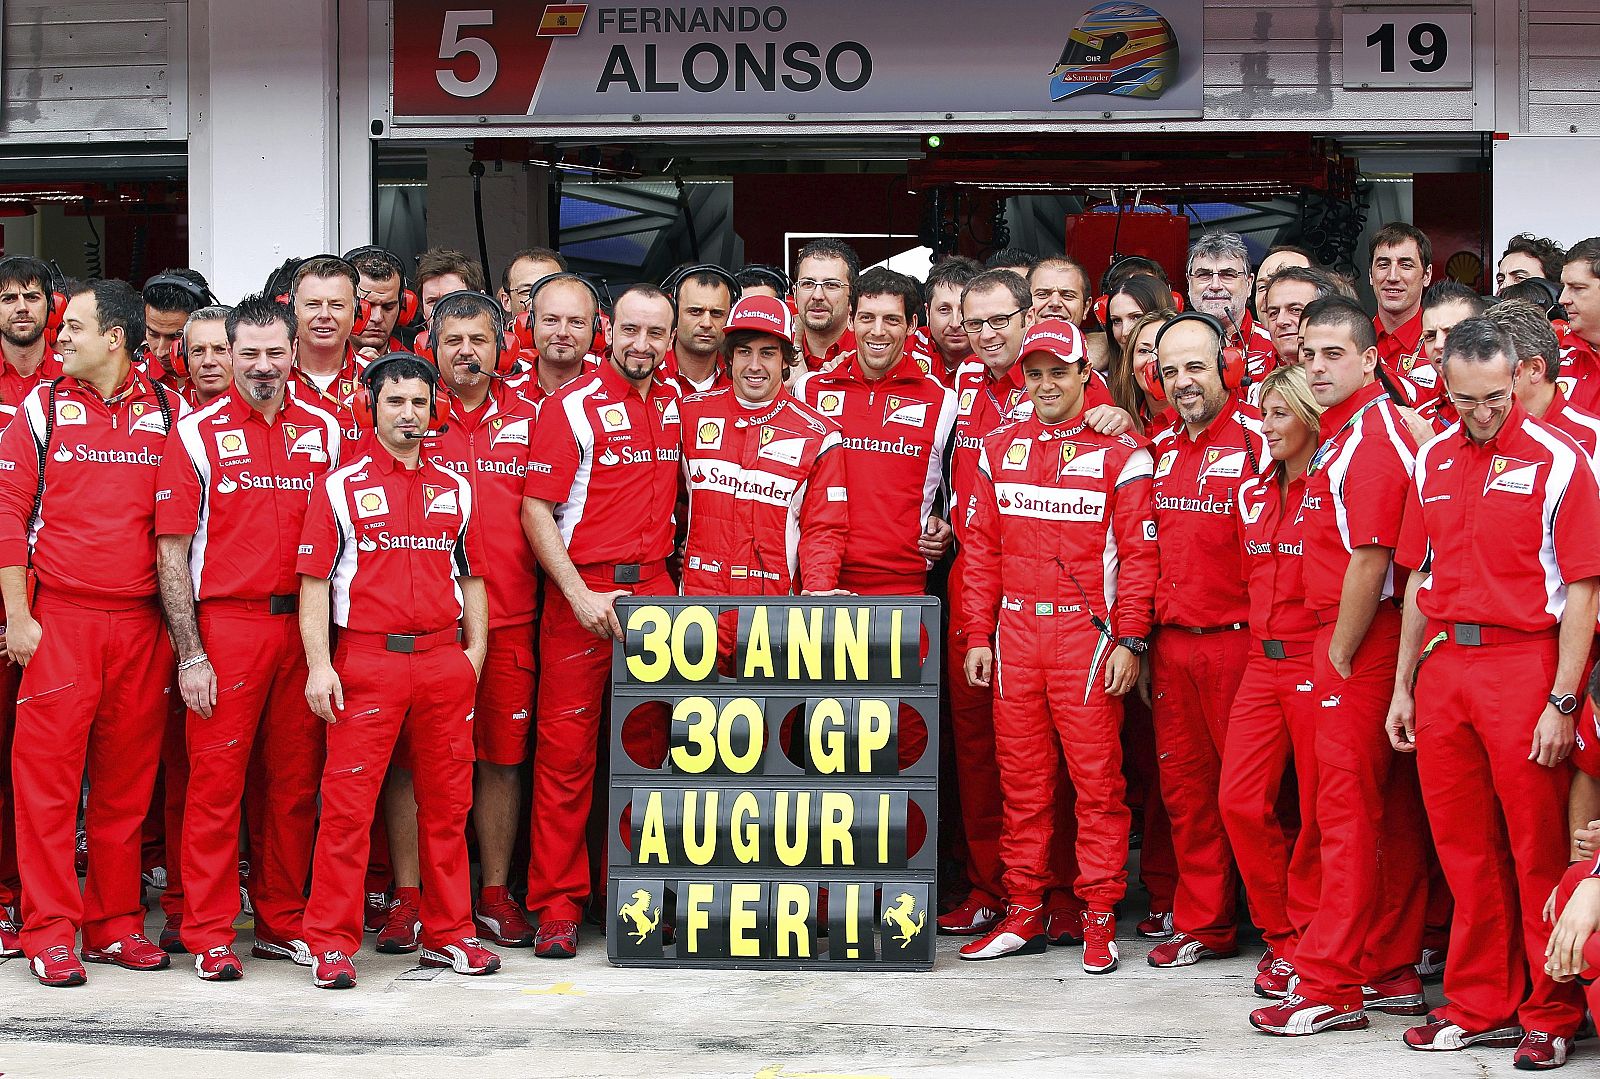 Alonso recibe las felicitaciones de todo el equipo Ferrari por su 30 cumpleaños